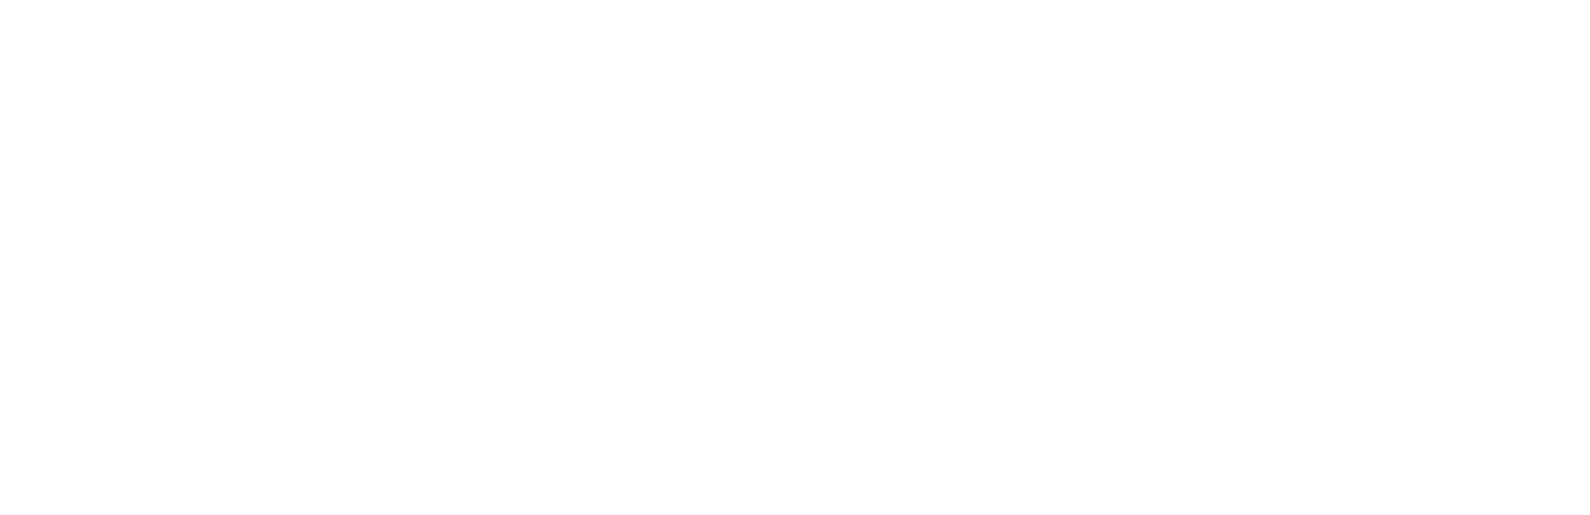 Adyen logo large for dark backgrounds (transparent PNG)